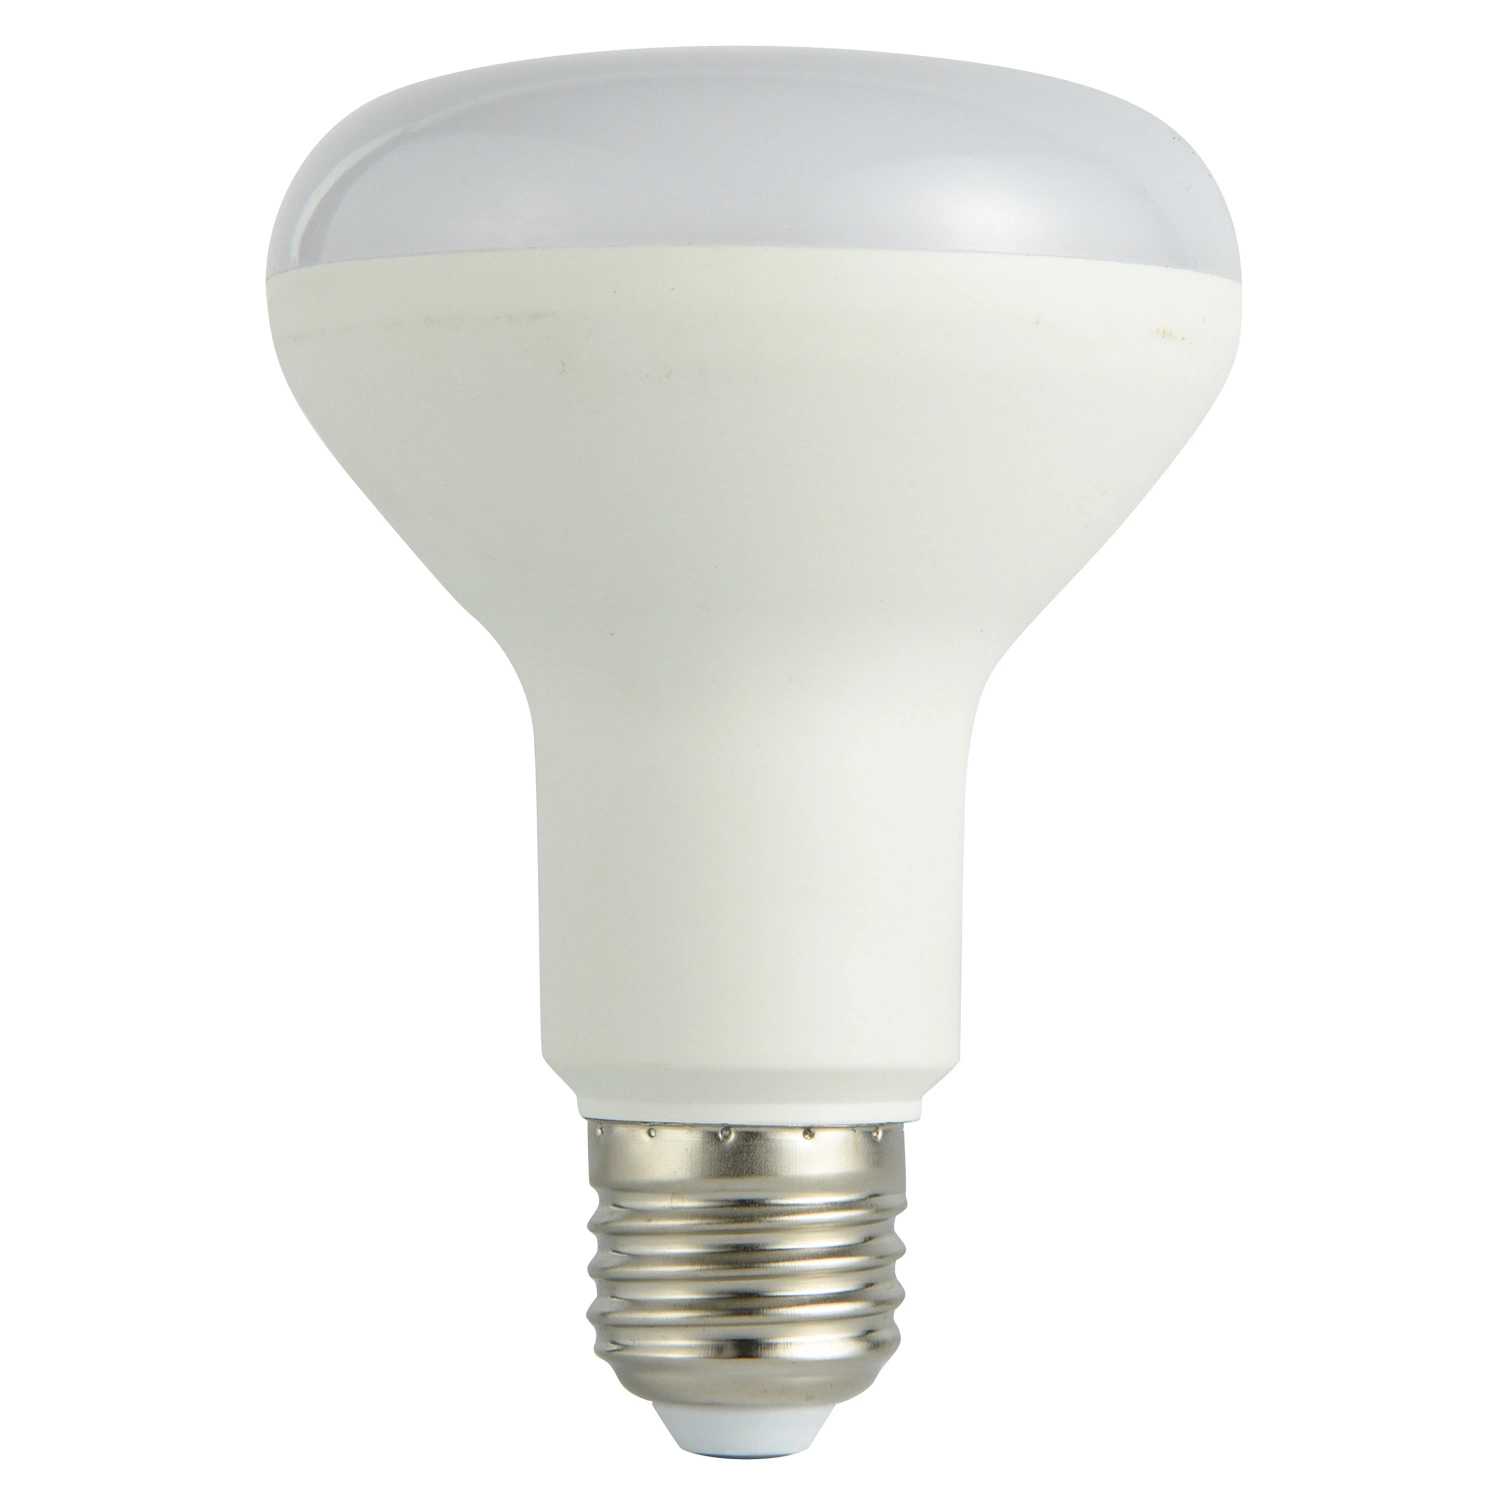 Lampe à économie d'énergie intelligente RVB de l'éclairage intérieur d'urgence 85-265Bluetooth V Indoortuya télécommande WiFi IC/RC réglable lumière E27 B22 Ampoule de LED